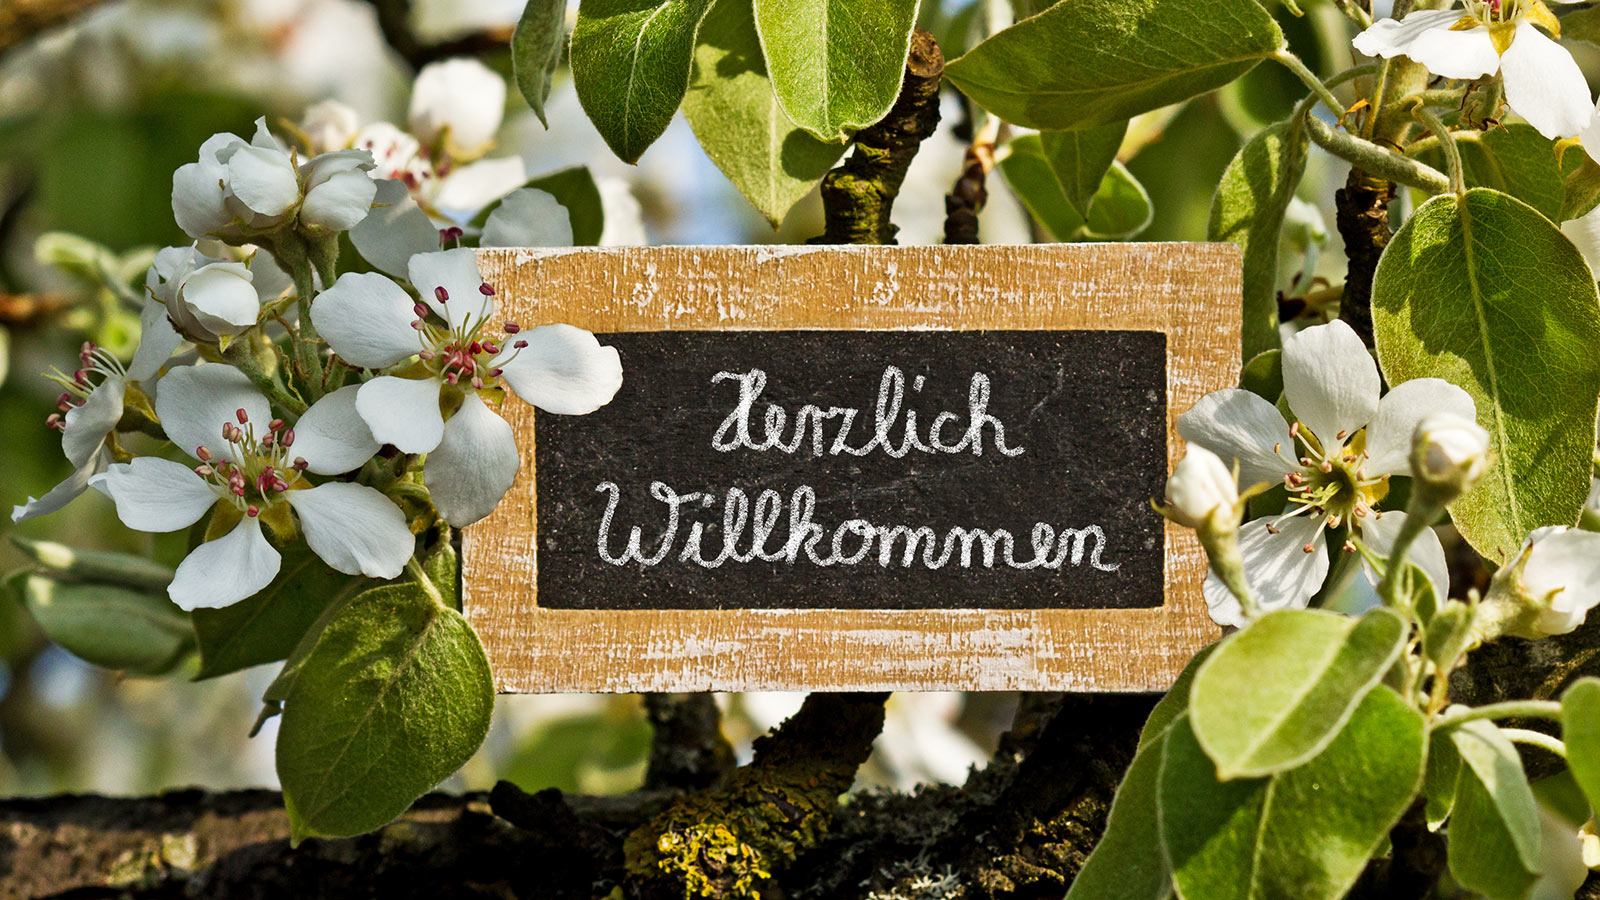 Holztafel mit Beschriftung "Herzlich Willkommen" umrahmt von Kirschbaumblüten. Für das Ehrenamt-Team zusammen ankommen. Foto: Adobe Stock